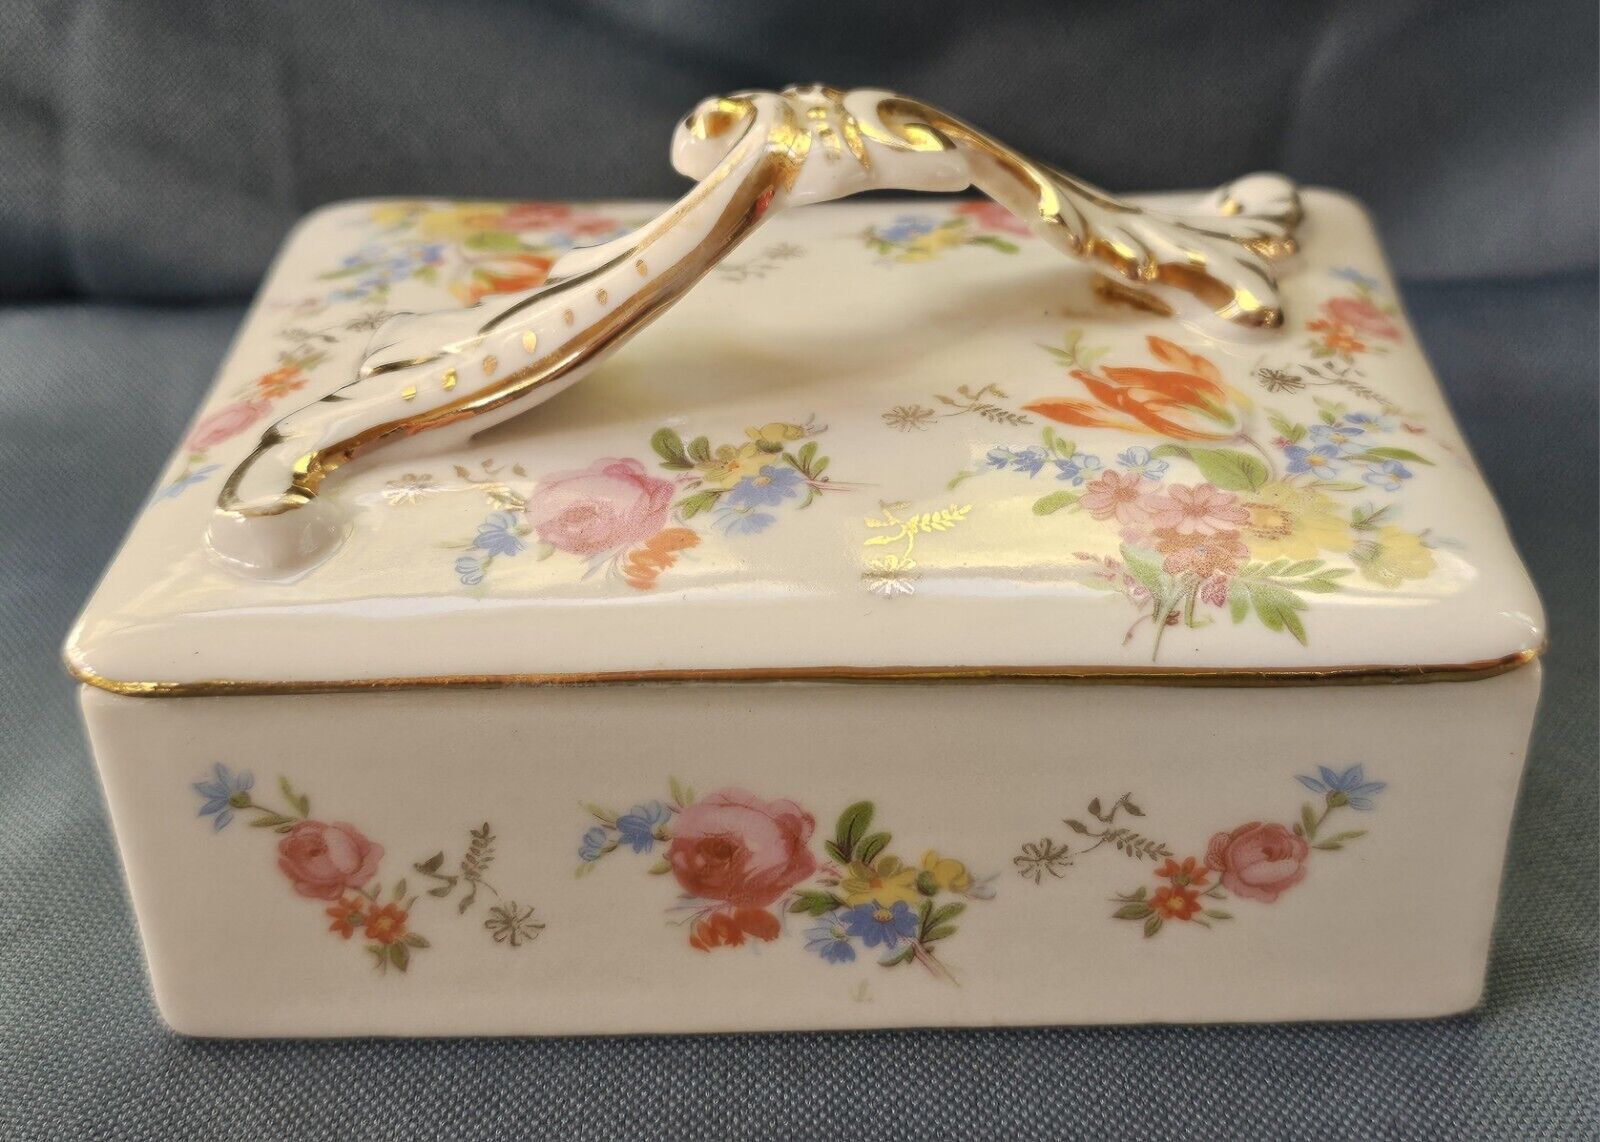 Antique Chelsea Porcelain Trinket Box Gold Anchor Period 1756 - 1769 Floral